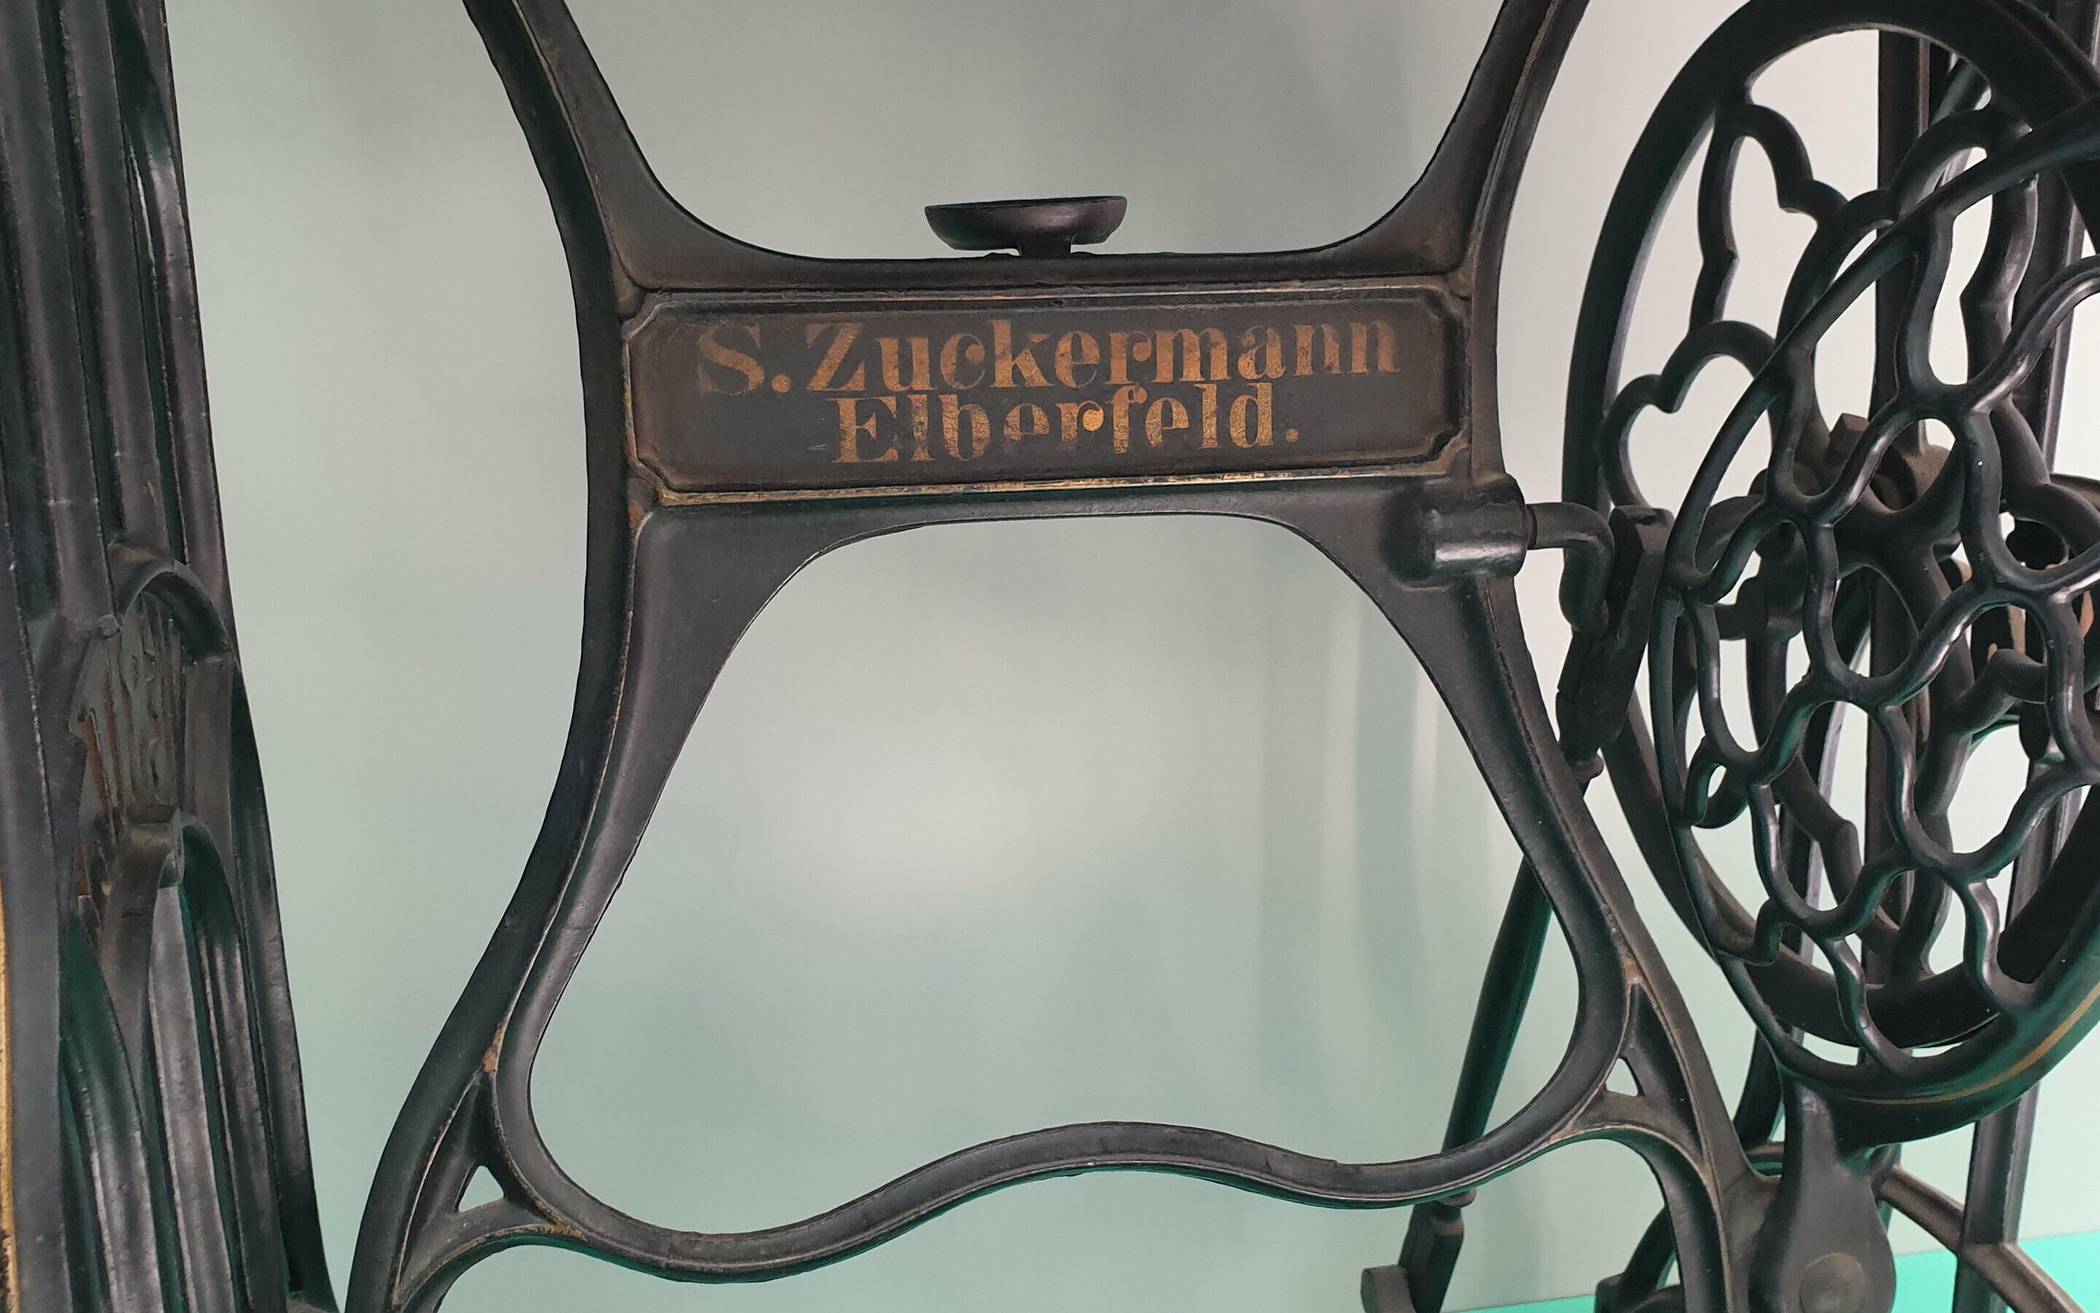  Auf dem Gestell ist der Schriftzug „S. Zuckermann, Elberfeld“ zu lesen. 